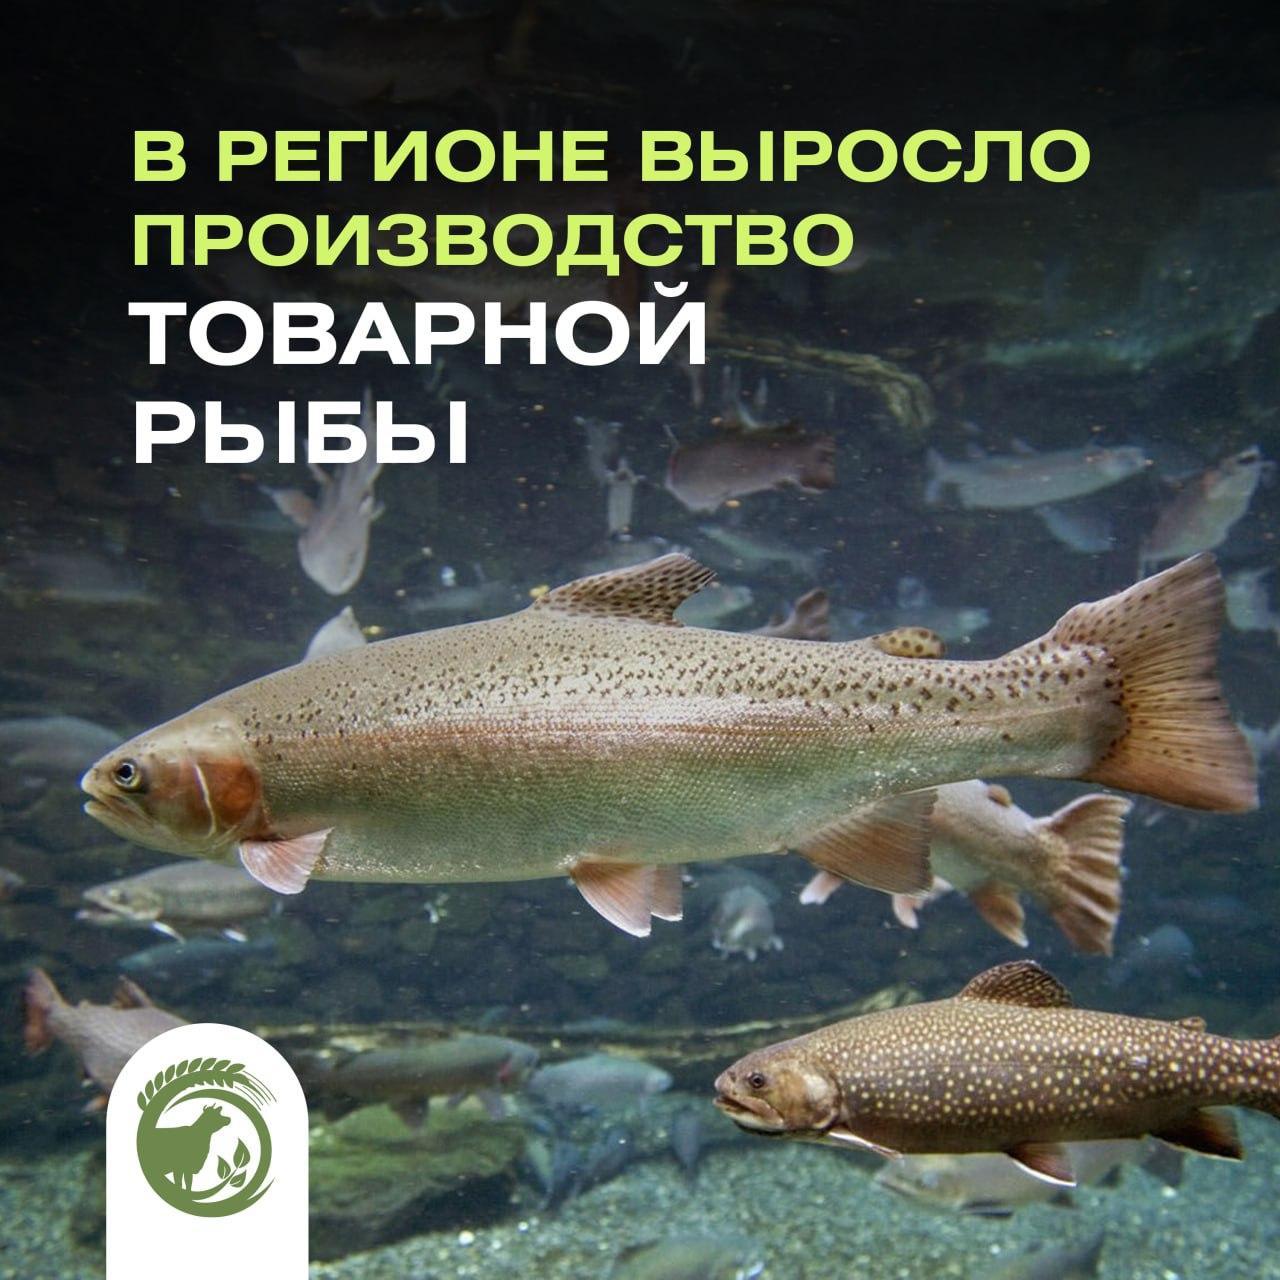 В прошлом году в Ульяновской области выросло производство товарной рыбы.